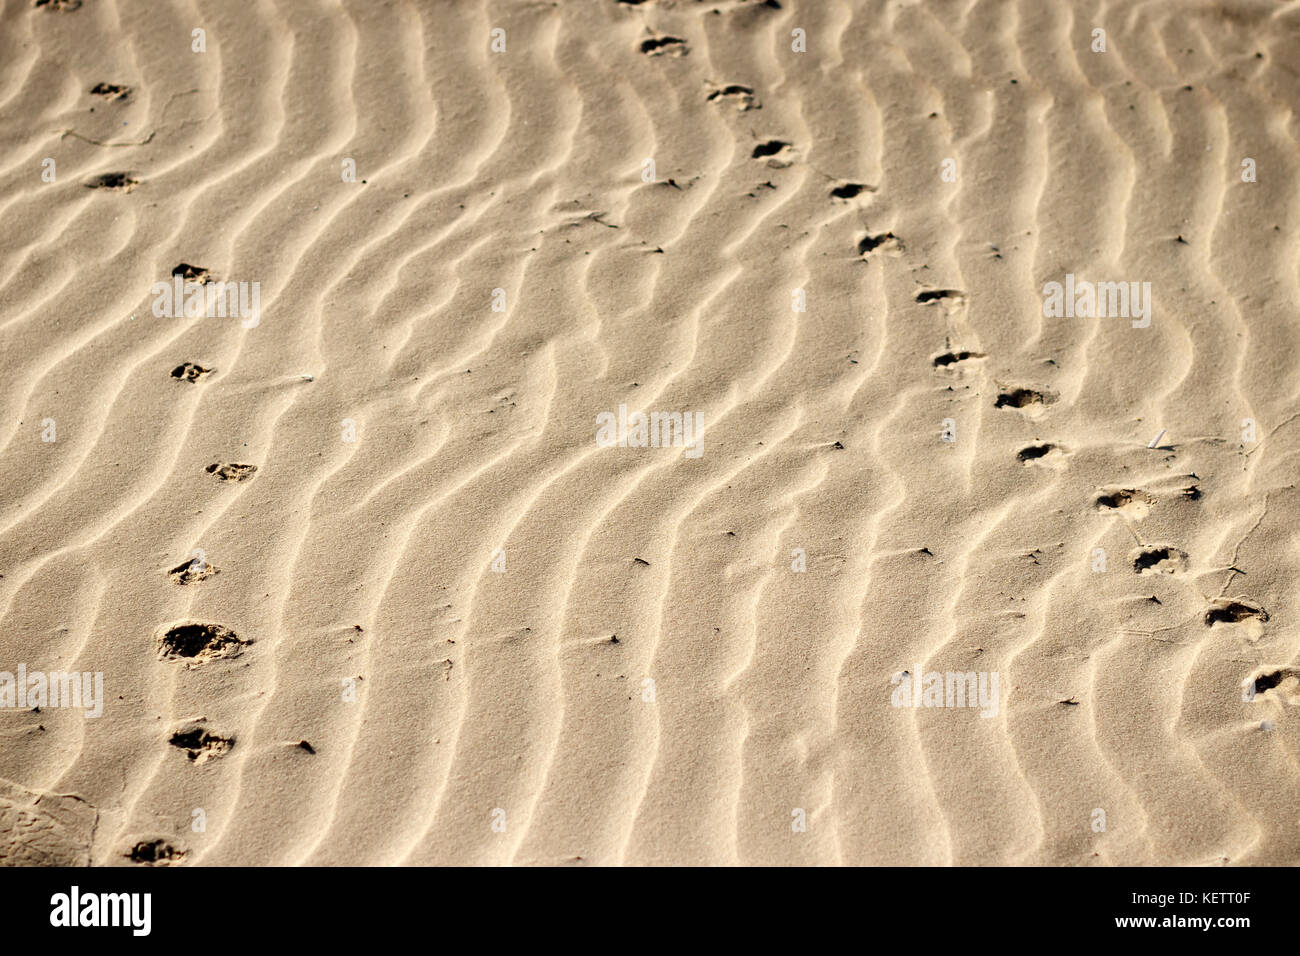 Dunes de sable avec des traces d'animaux Banque D'Images